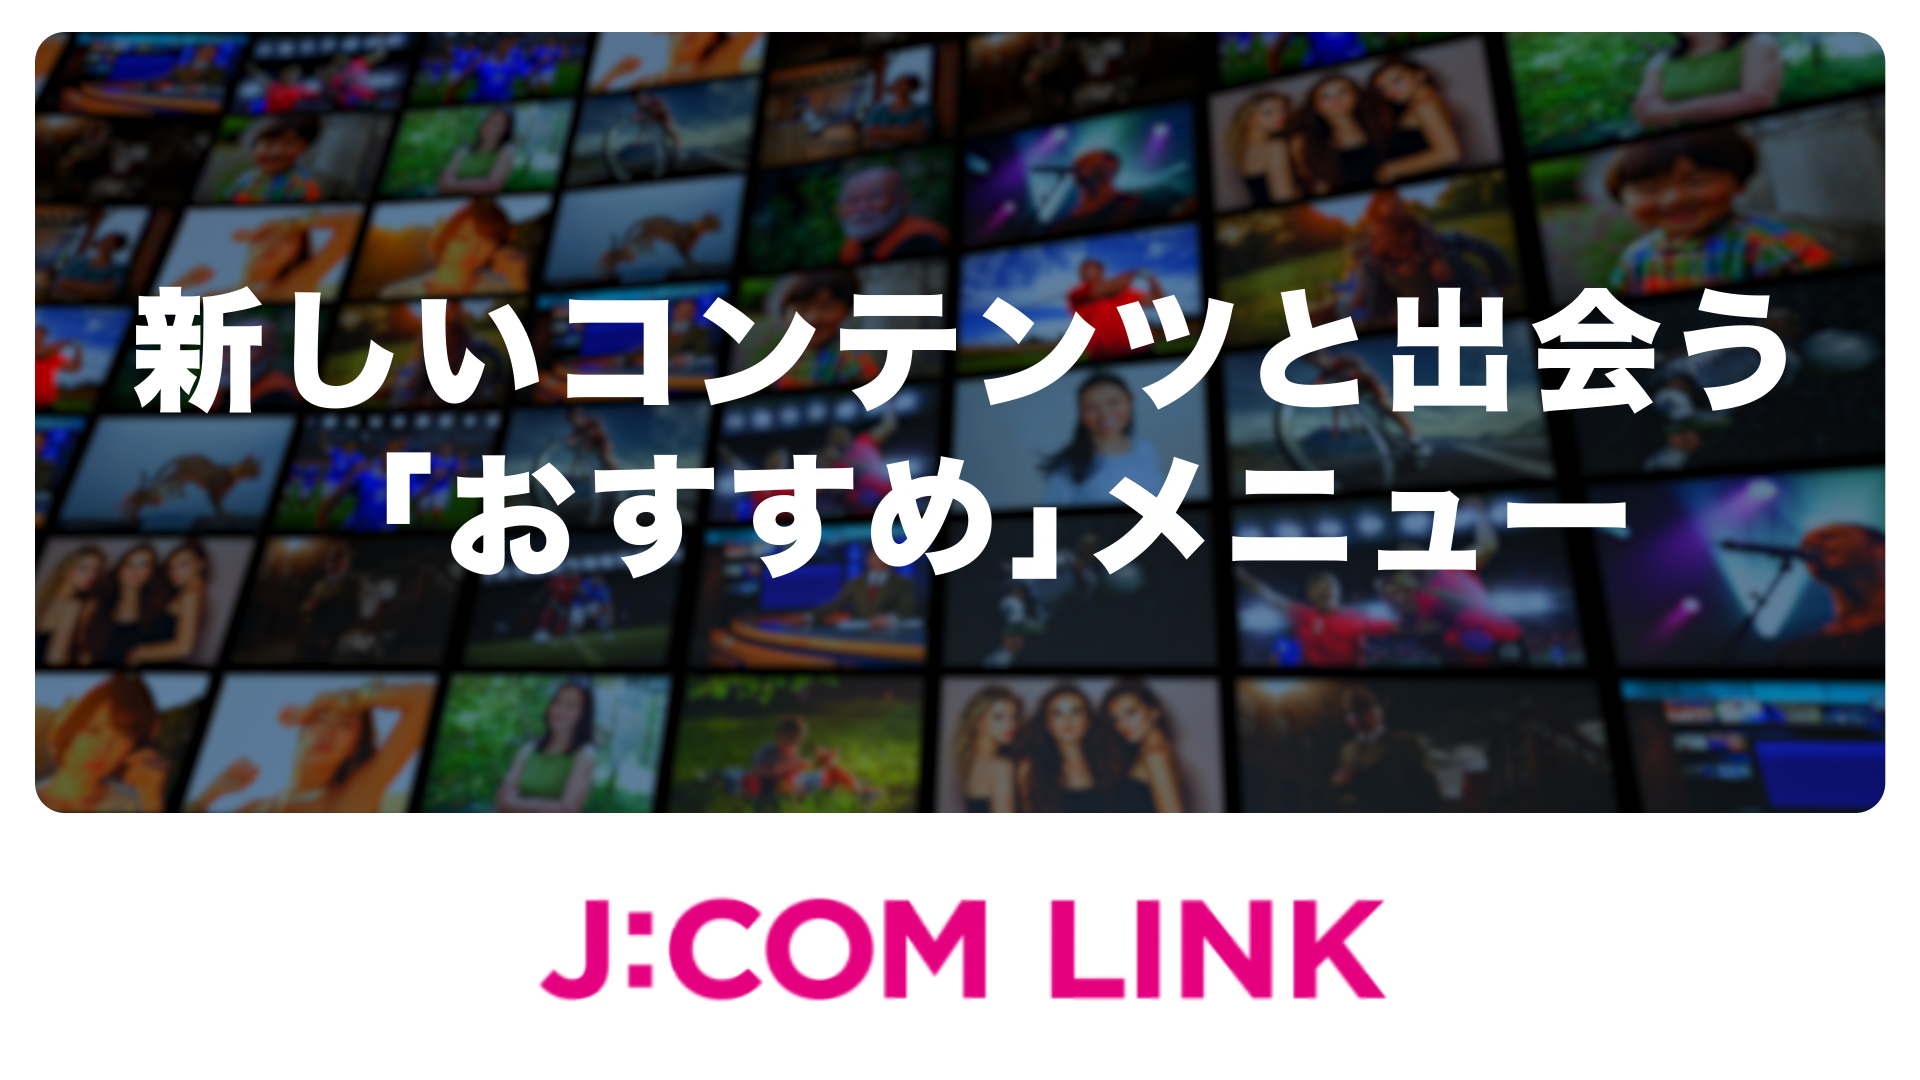 J:COM LINK - 新しいコンテンツと出会う「おすすめ」メニュー（動画）